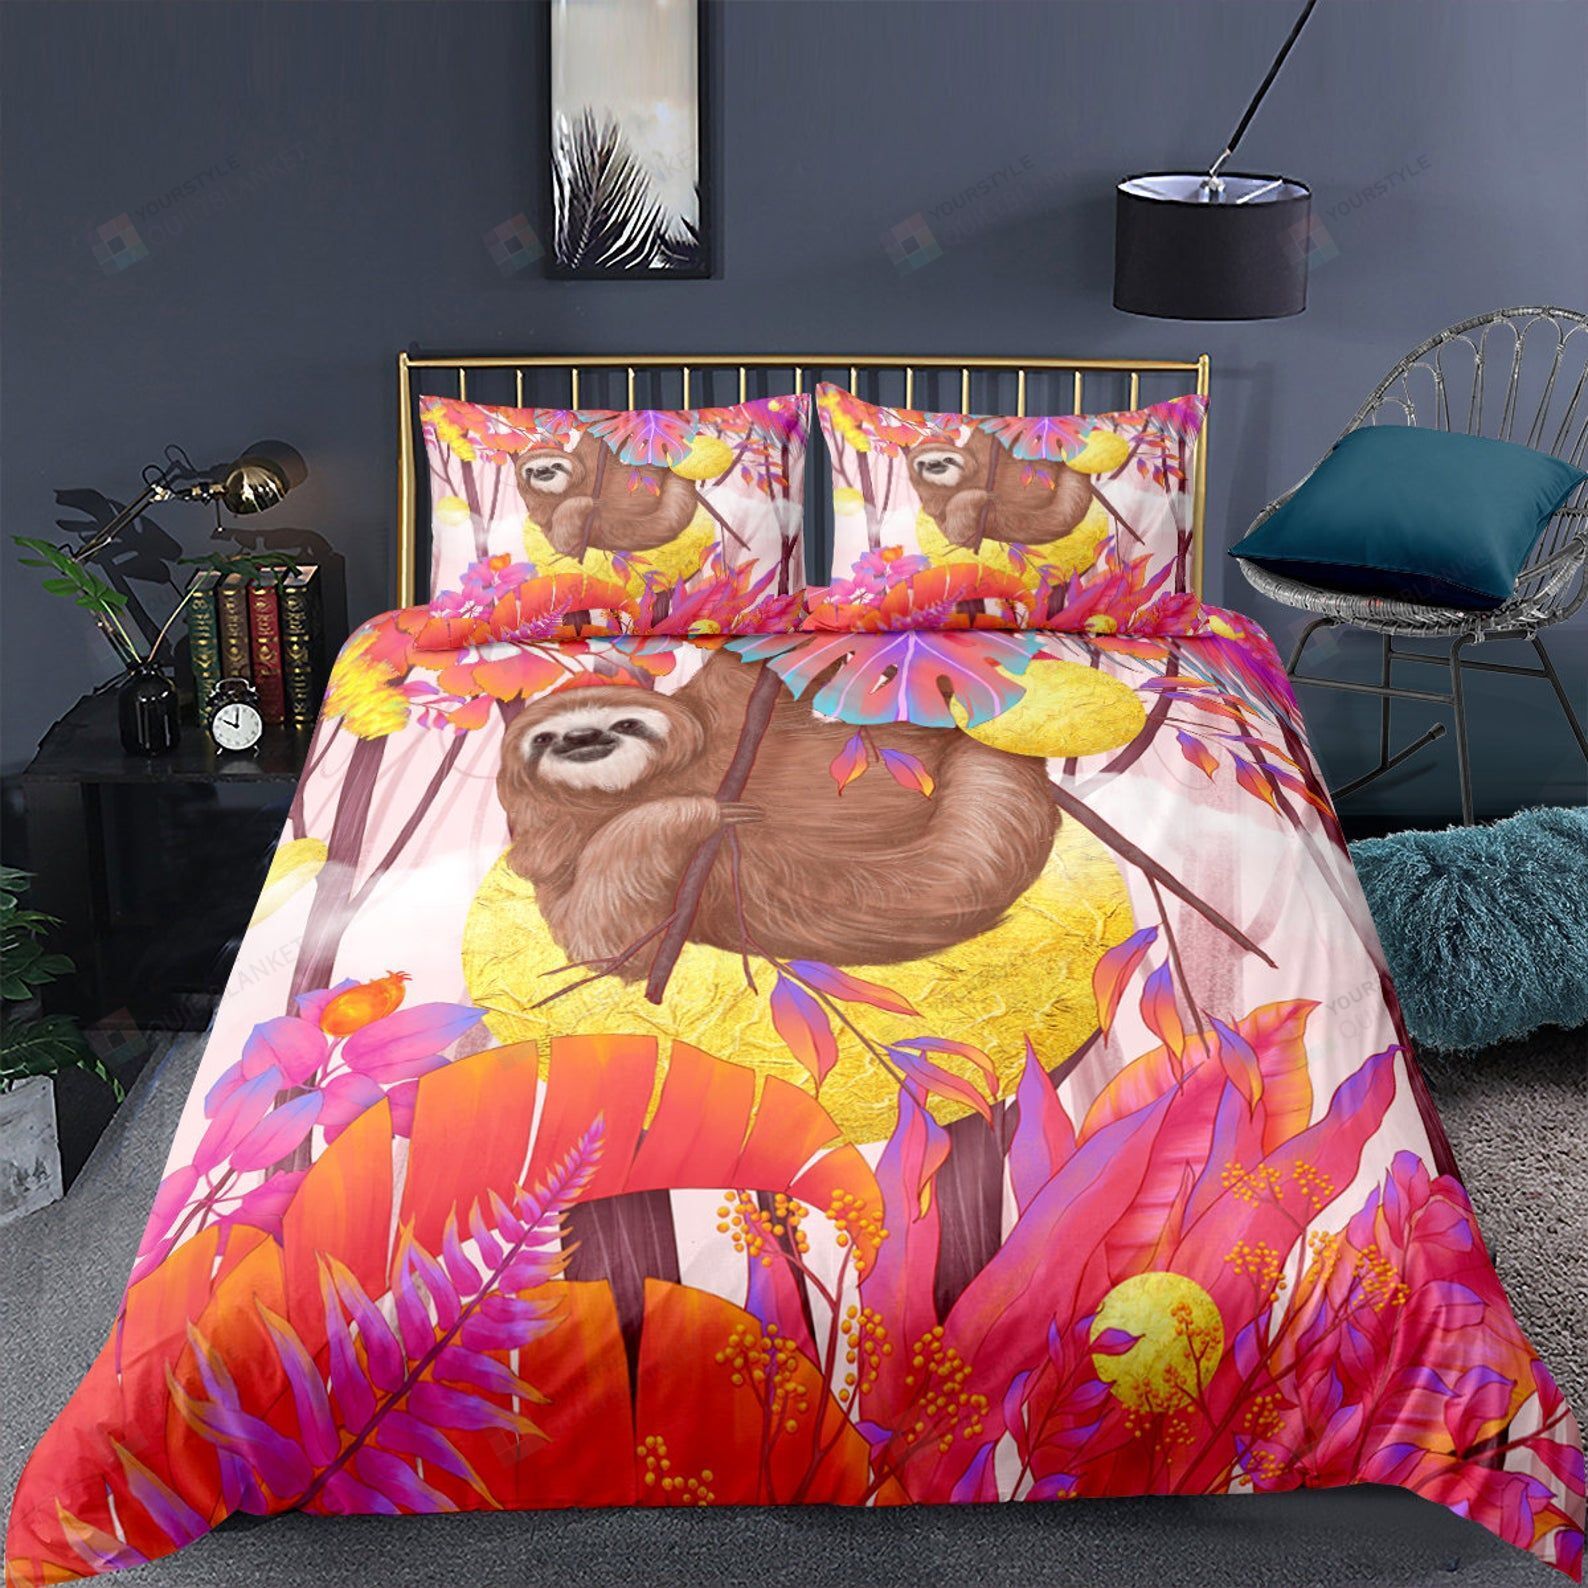 Sloth Bed Sheets Duvet Cover Bedding Sets